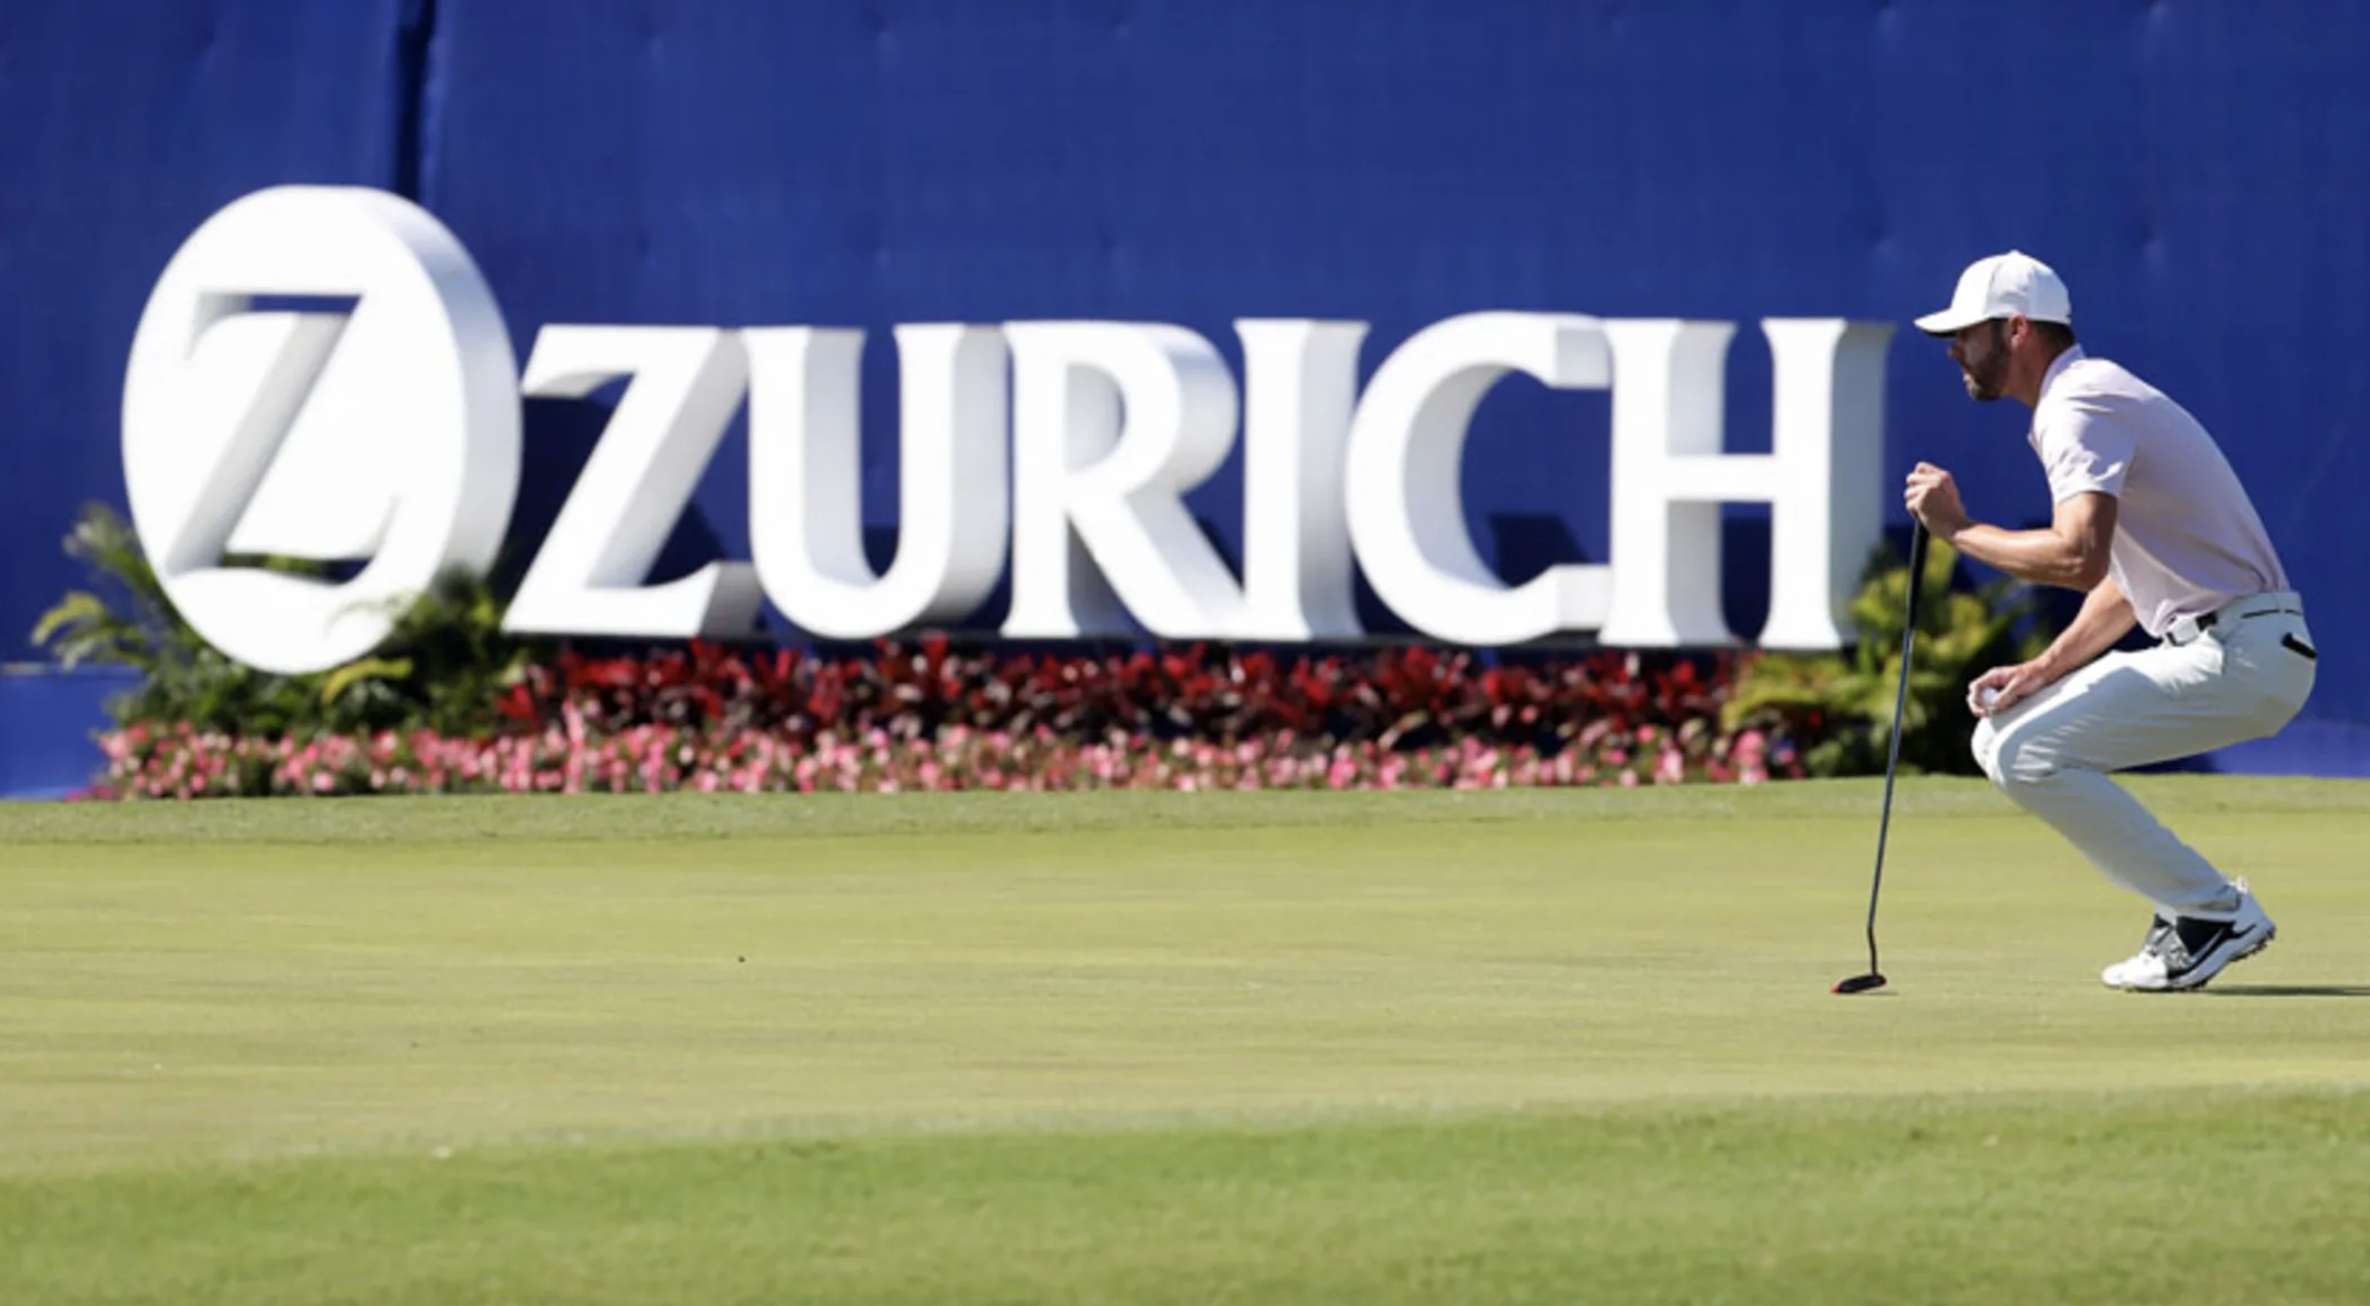 Zurich Classic 2019 đã đến hồi quyết định